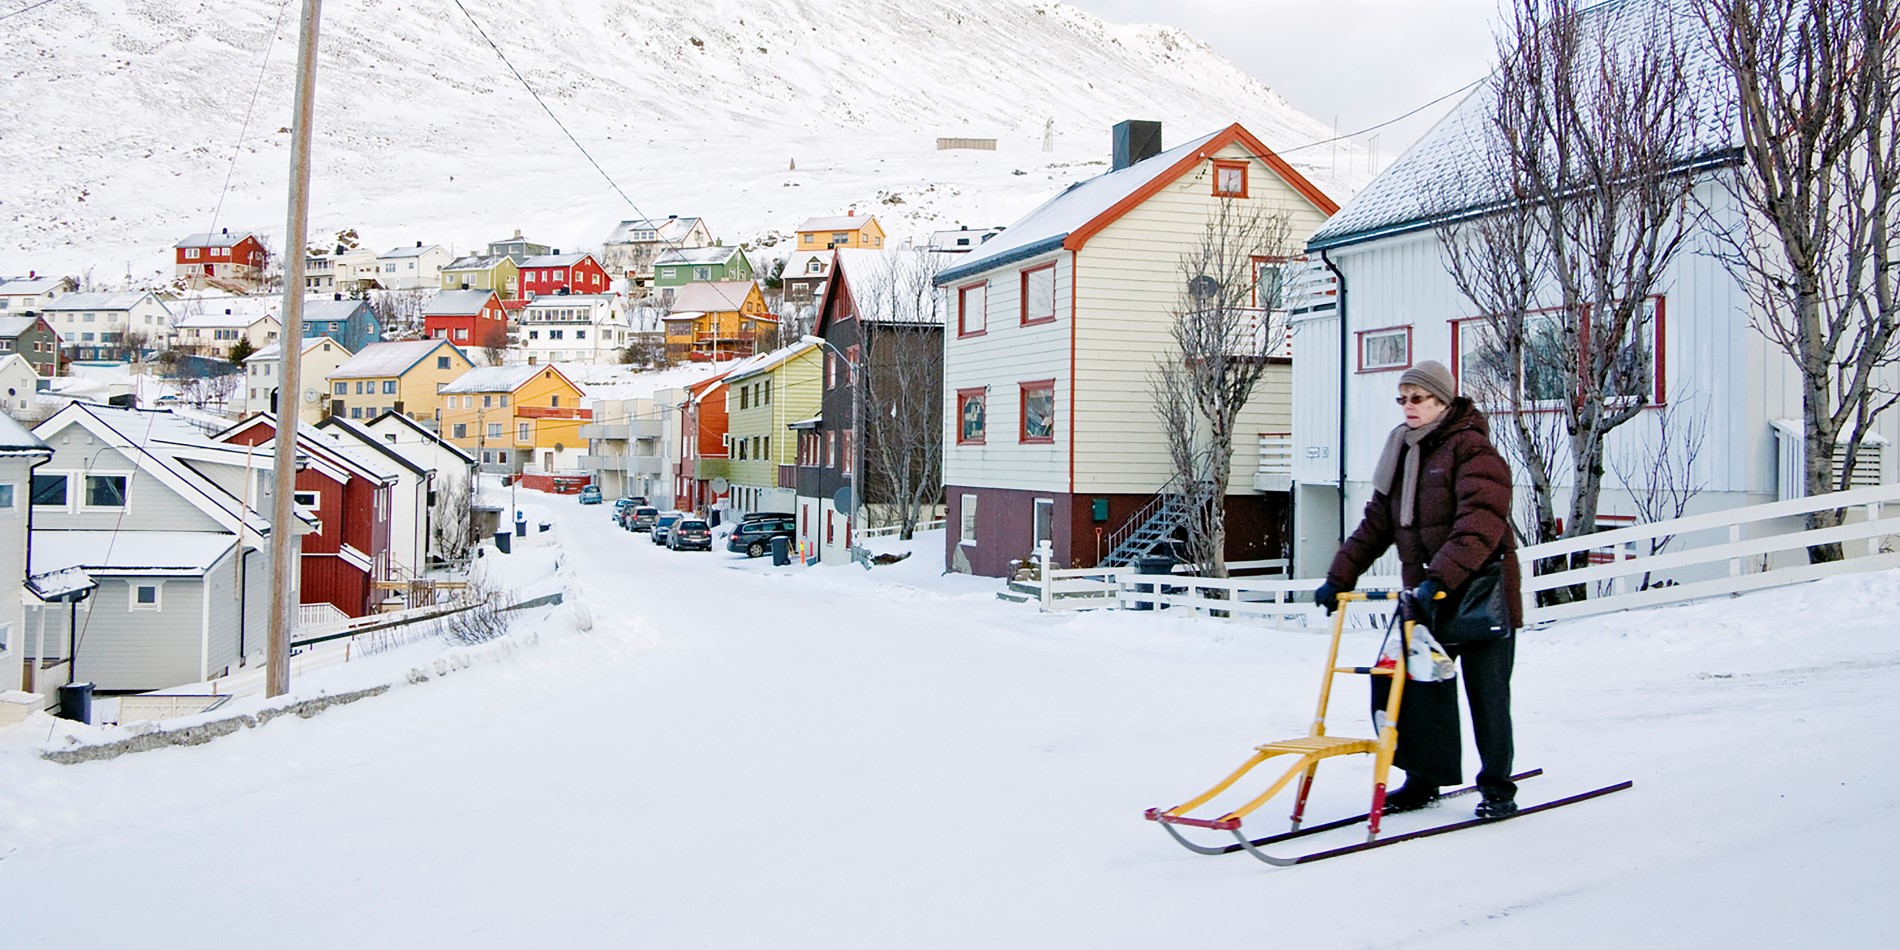 Et bilde av en eldre kvinne i snøen, med en gate med vakre, små og fargerike trehus i bakgrunnen